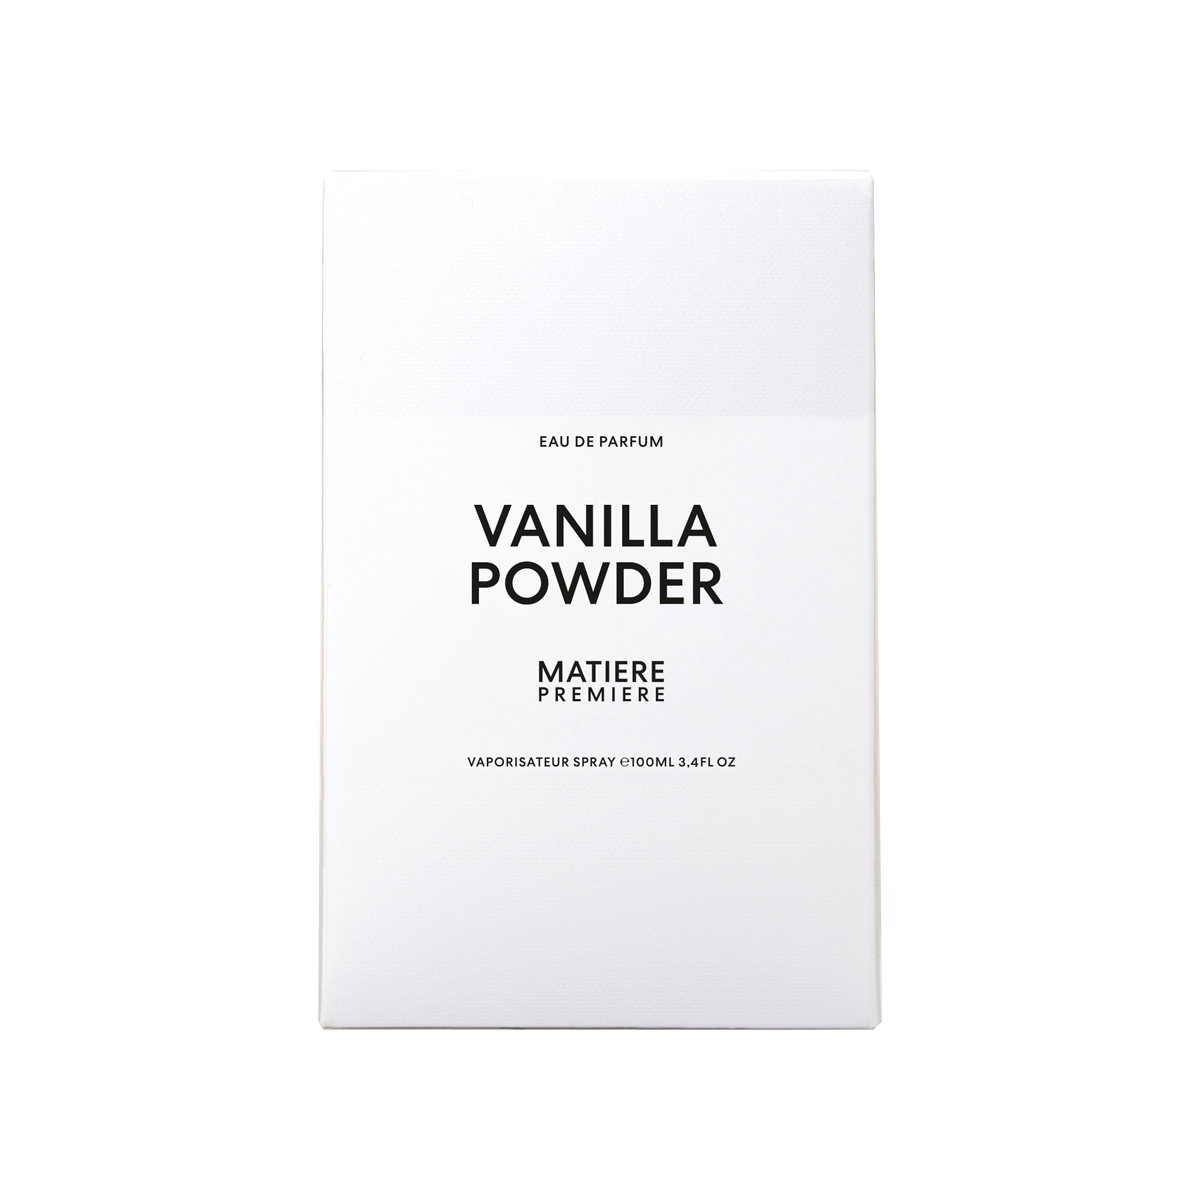 Matiere Premiere - Vanilla Powder Eau de Parfum